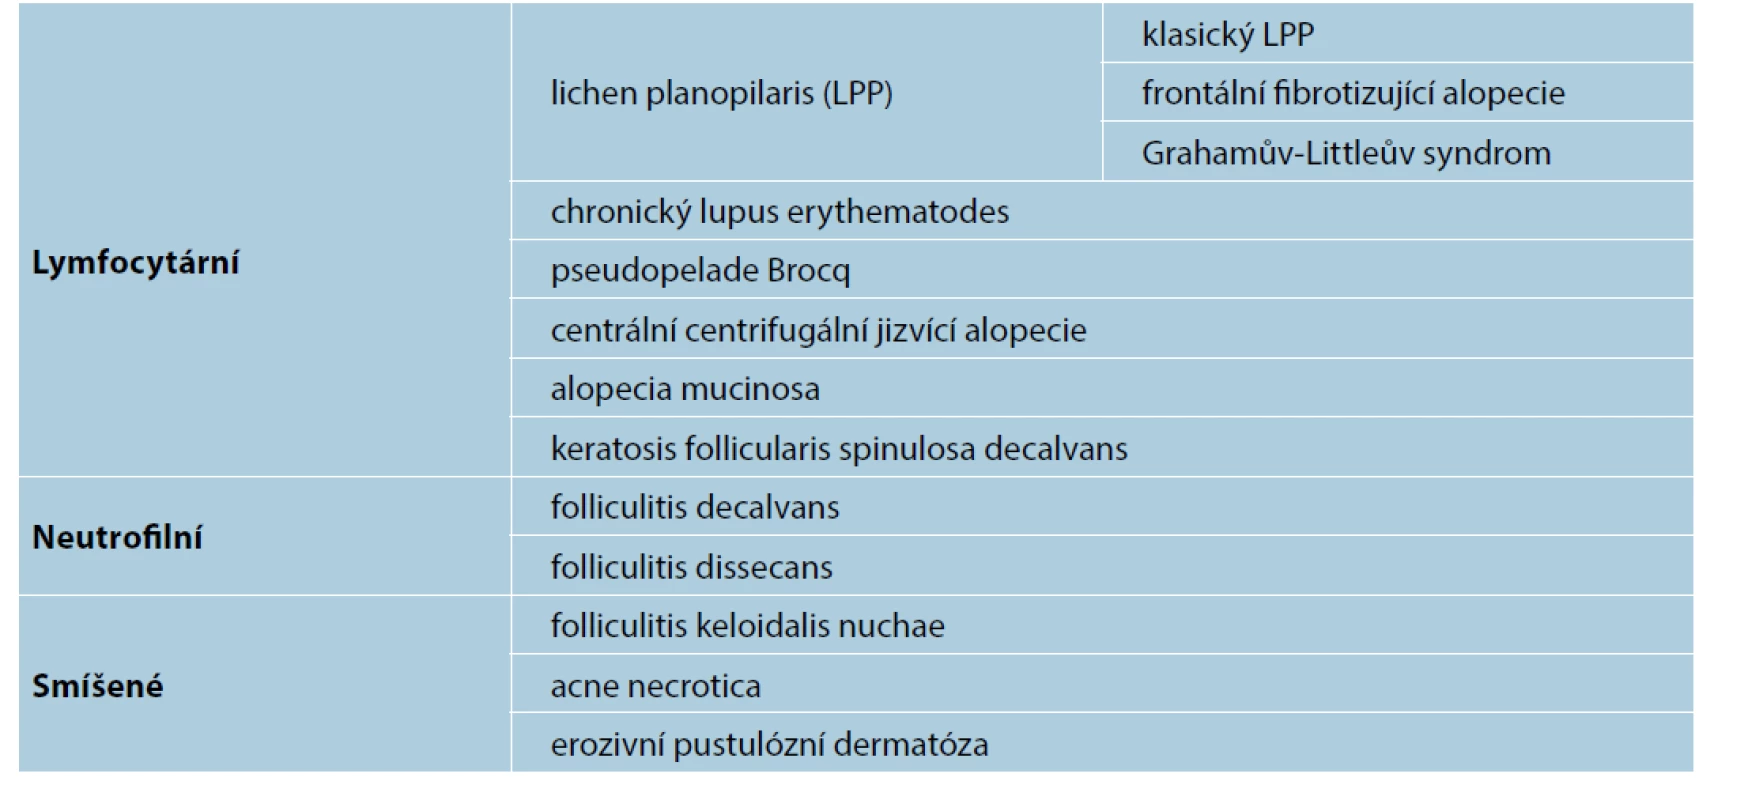 Klasifikace primárních jizvících alopecií podle převažujícího typu zánětlivého infiltrátu